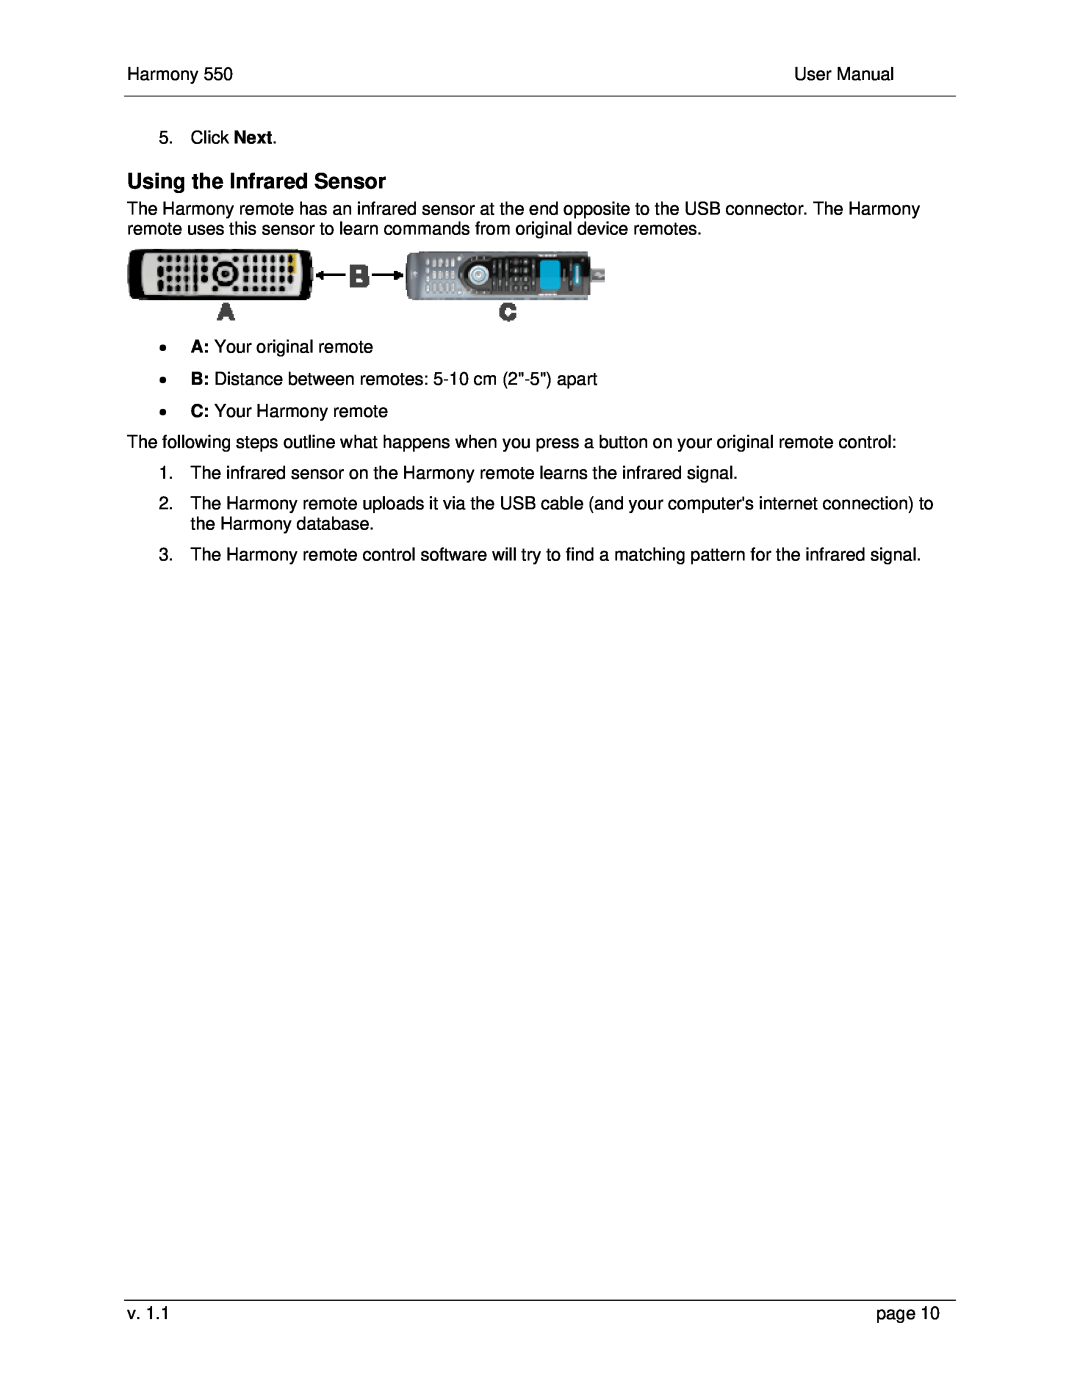 Logitech 550 user manual Using the Infrared Sensor 